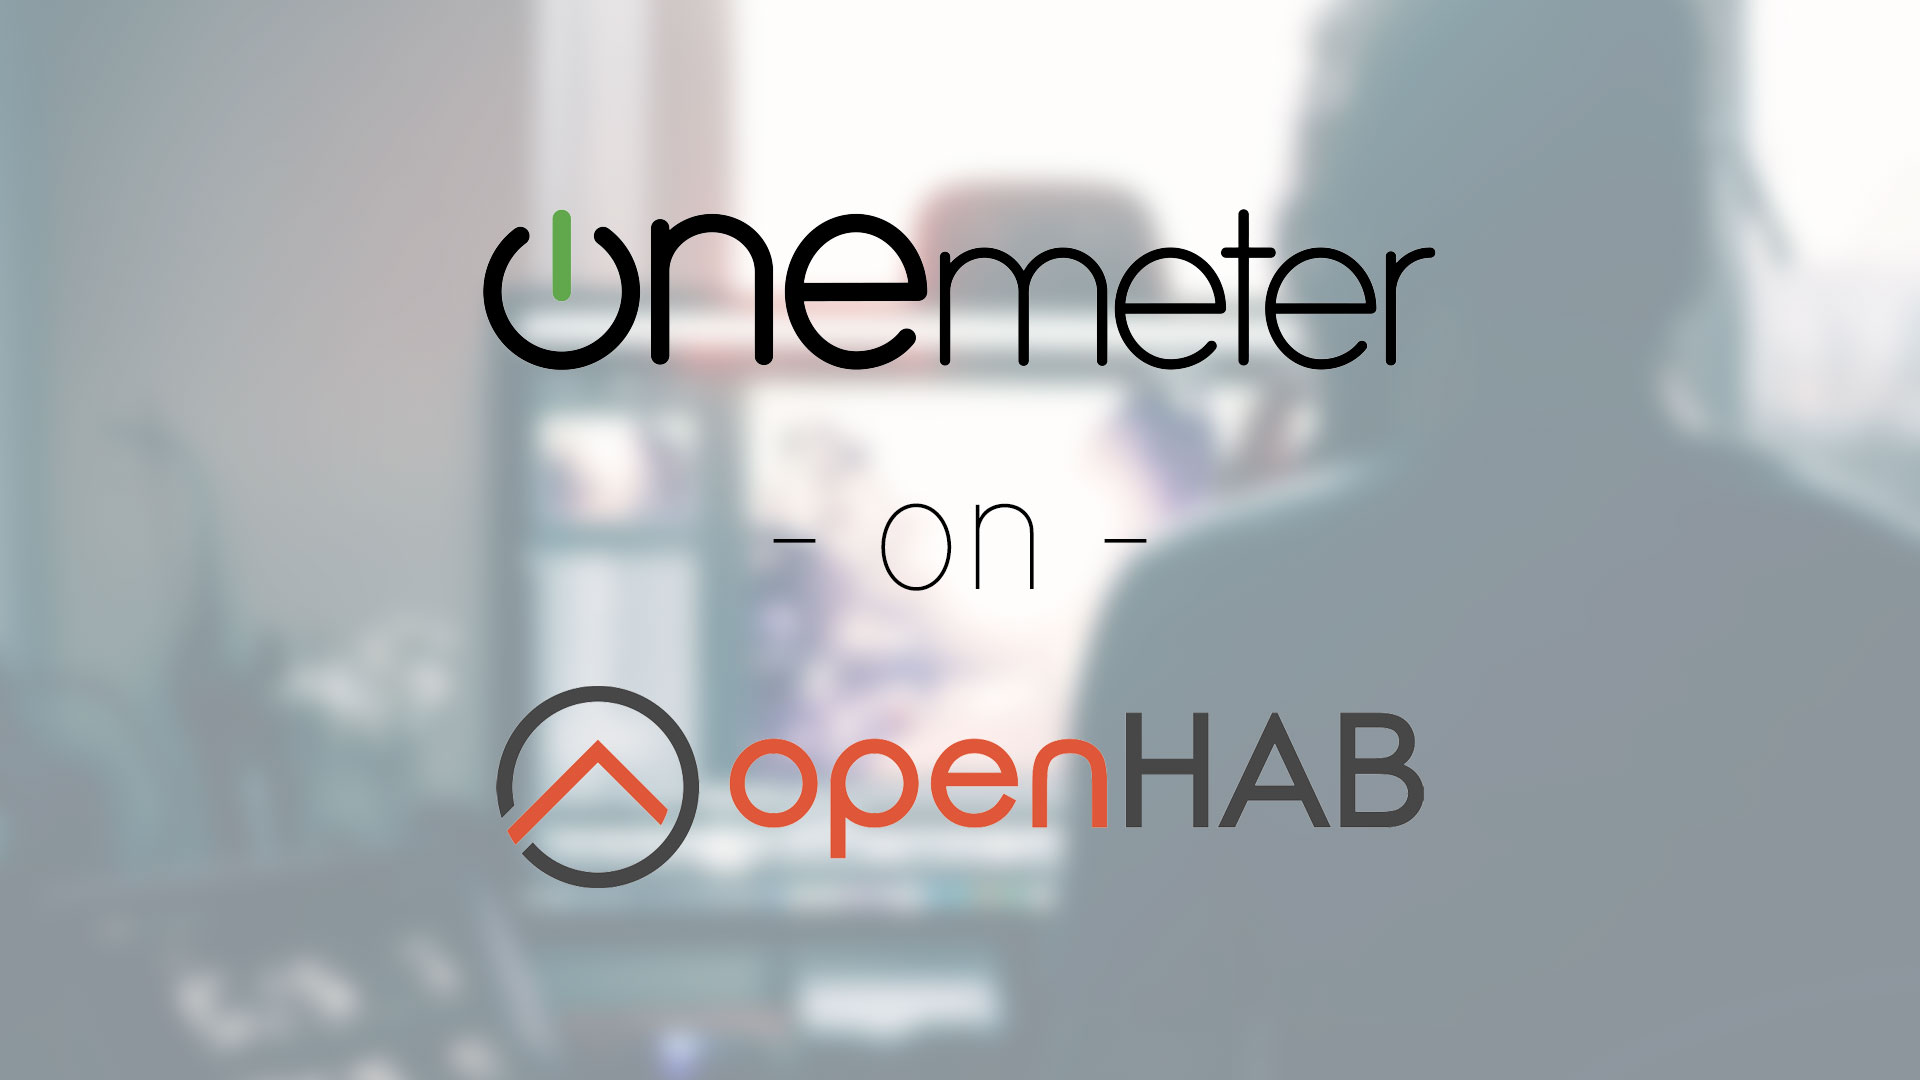 Jak z pomocą OneMeter pobierać dane o zużywanej energii elektrycznej do openHAB